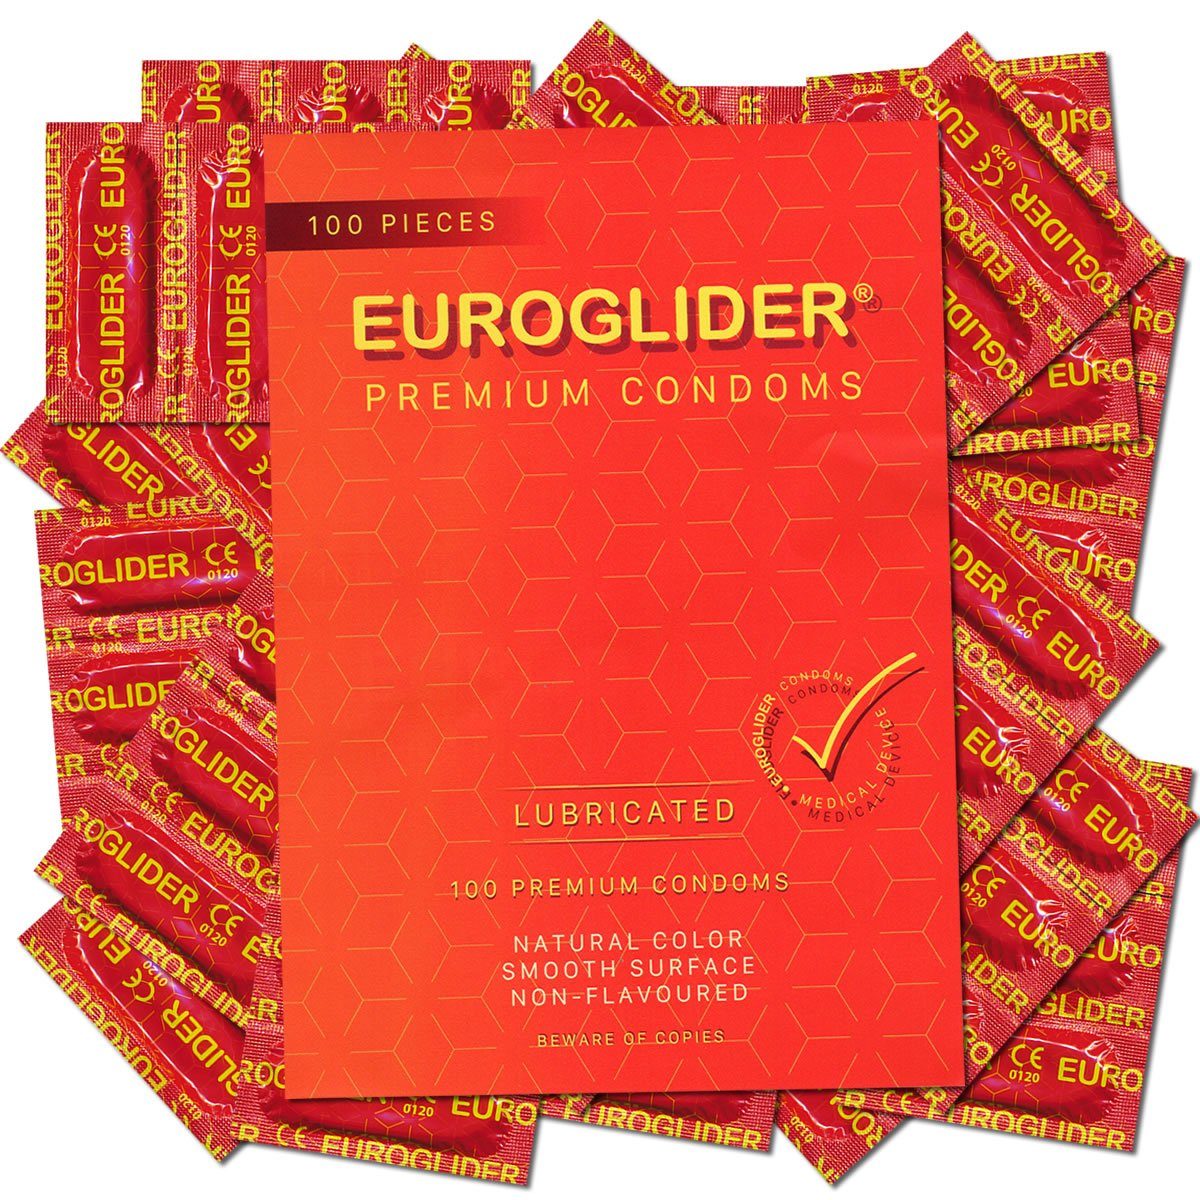 Euroglider Kondome Asha «Euroglider» strapazierfähige Profi-Kondome Packung mit, 100 St., hohe Qualität, sicher und zuverlässig, für professionelle Ansprüche geeignet, hervorragendes Preis-Leistungsverhältnis